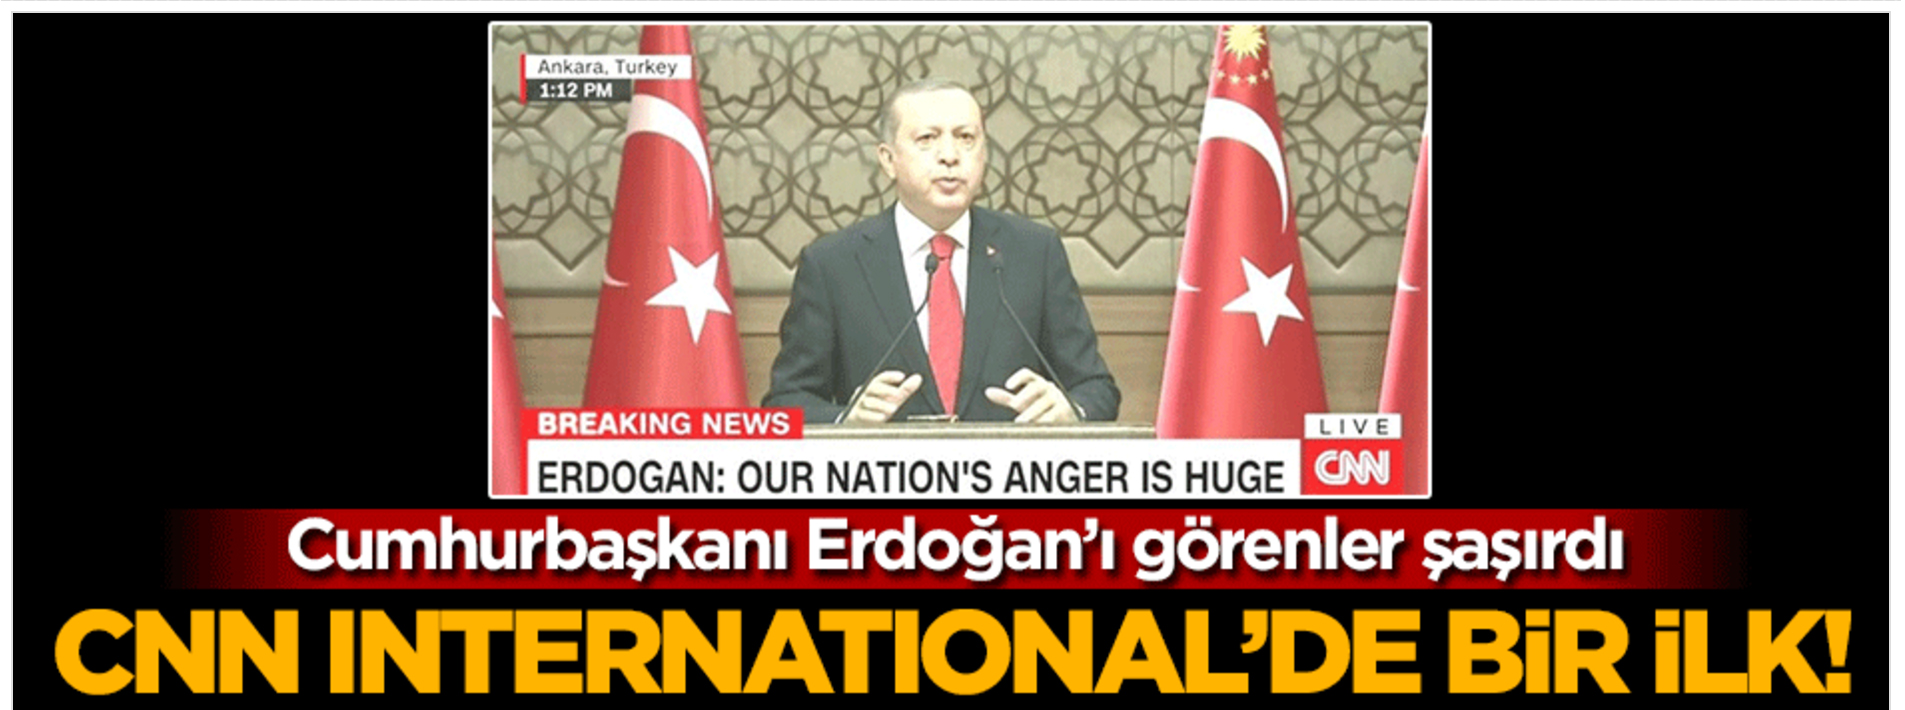 CNN International Erdoğan'ın konuşmasını ilk kez canlı yayınladı